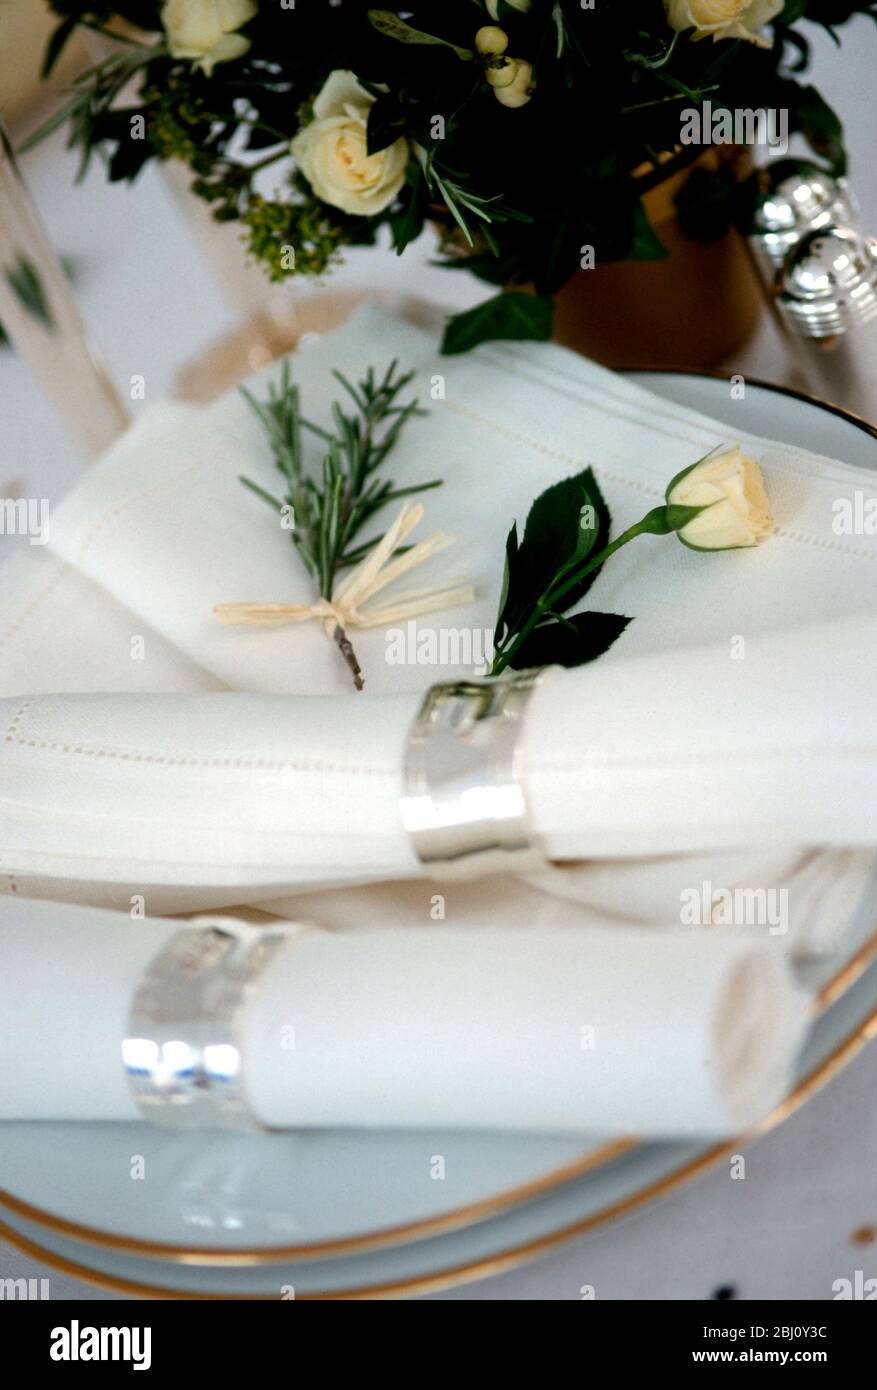 Servietten in silbernen Ringen mit Rosenknospen und goldgerandeten Tellern, bereit zum Auslegen für Hochzeitstisch - Stockfoto